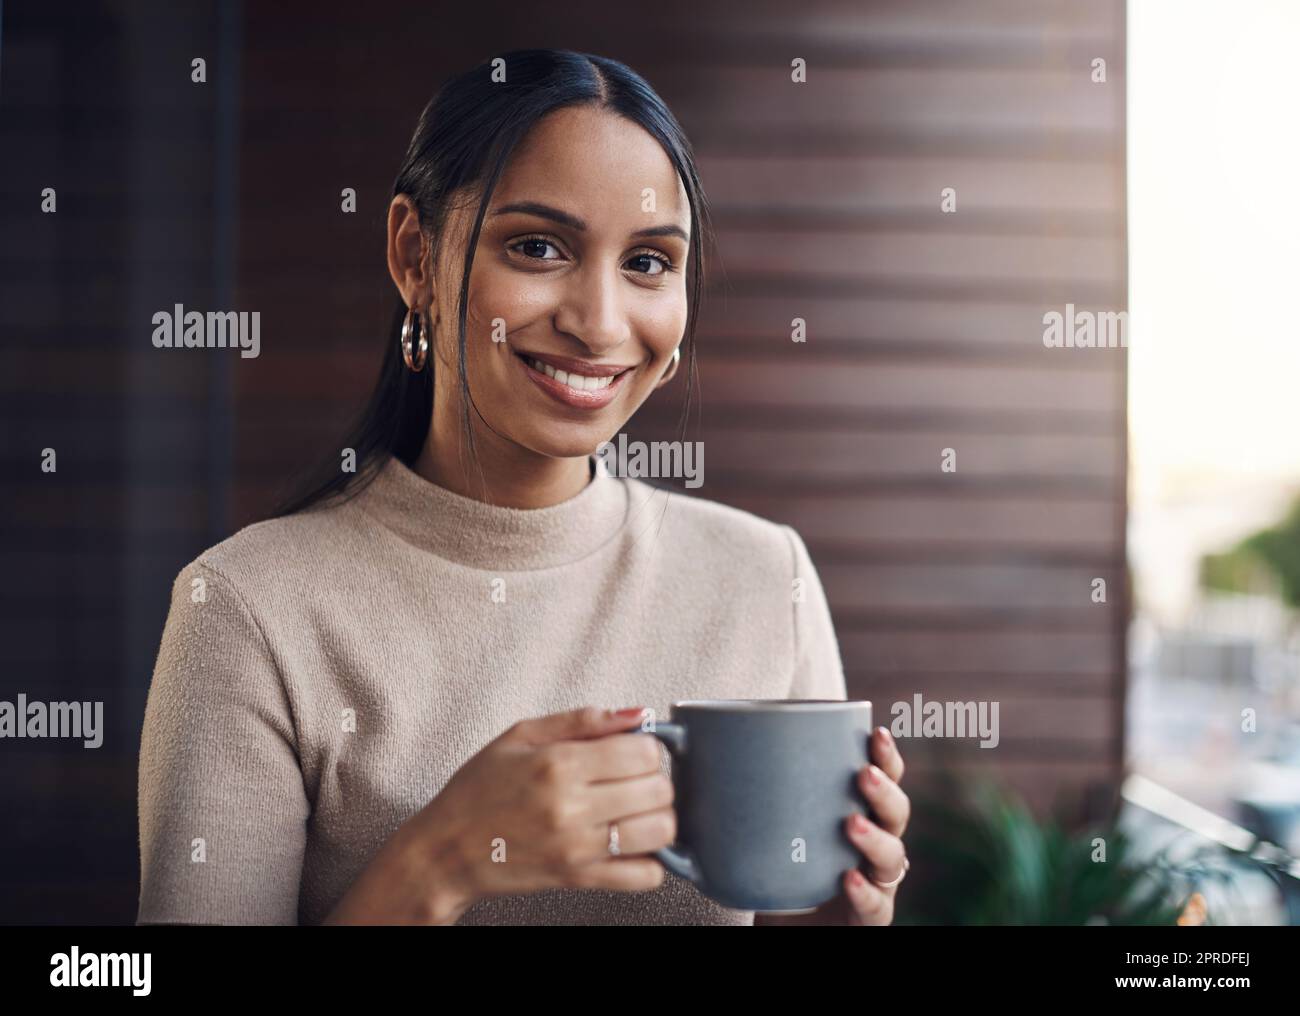 Was ist ein Arbeitstag ohne Kaffee. Ein Porträt einer attraktiven jungen Geschäftsfrau, die ihren Kaffee trinkt, während sie im Büro arbeitet. Stockfoto